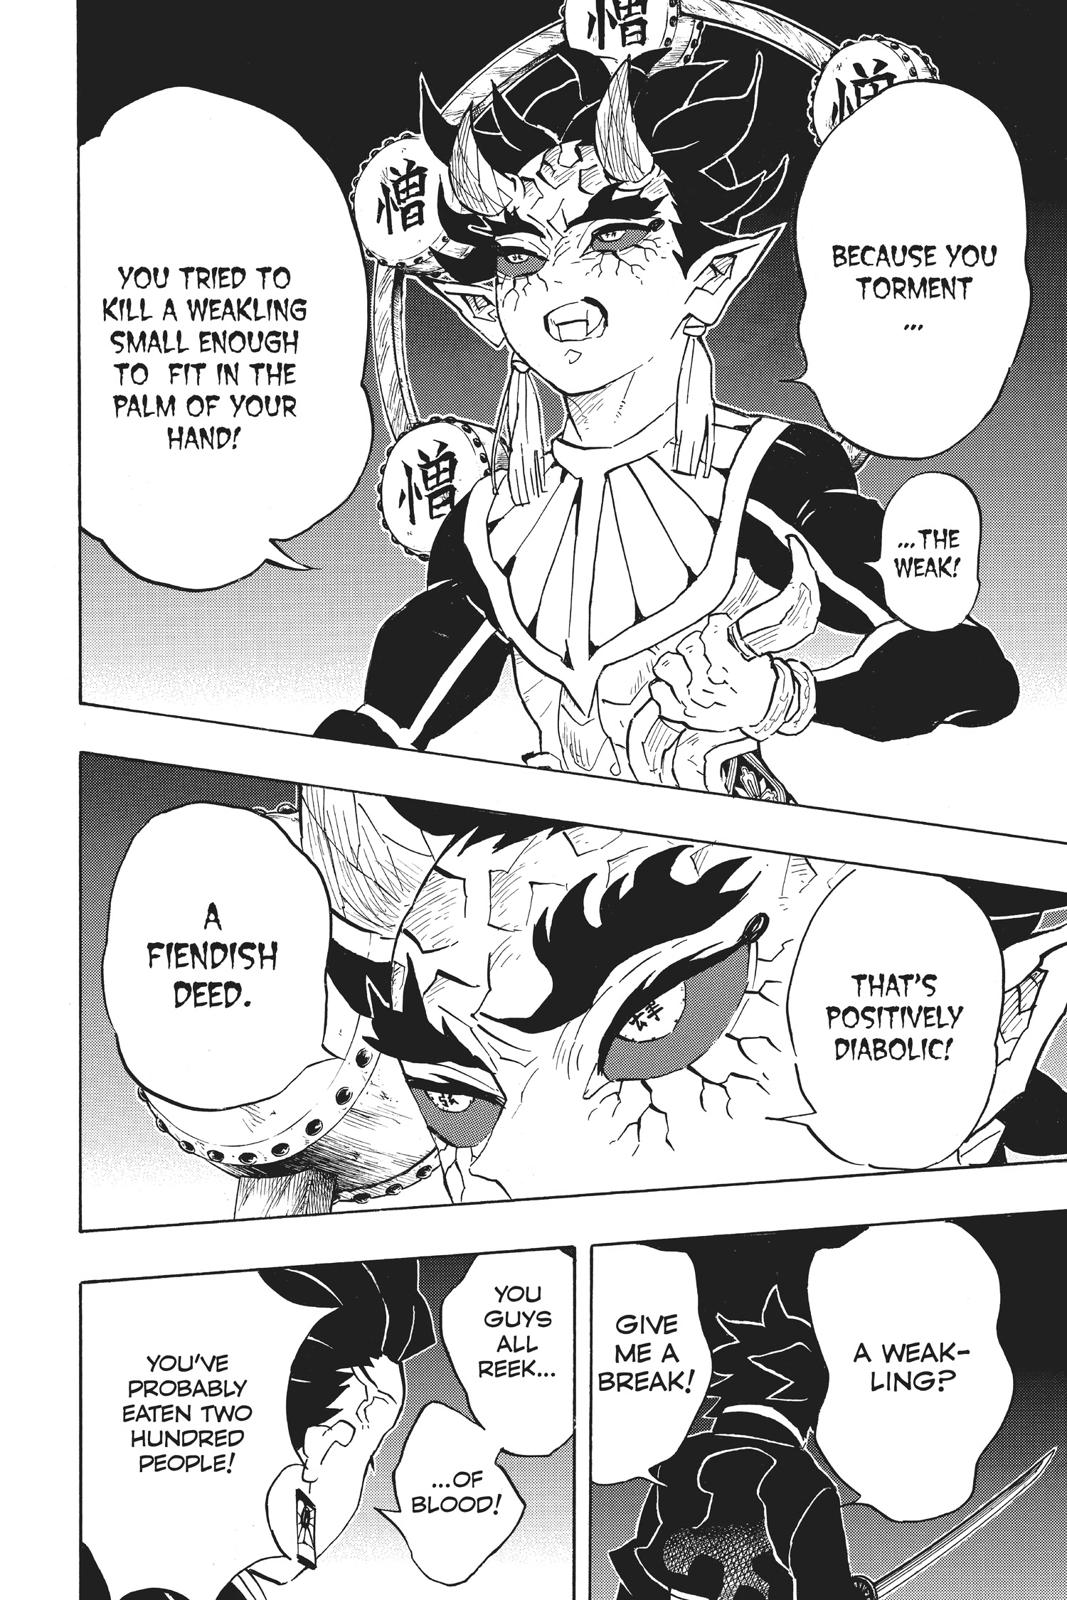 Demon Slayer Manga Manga Chapter - 116 - image 21